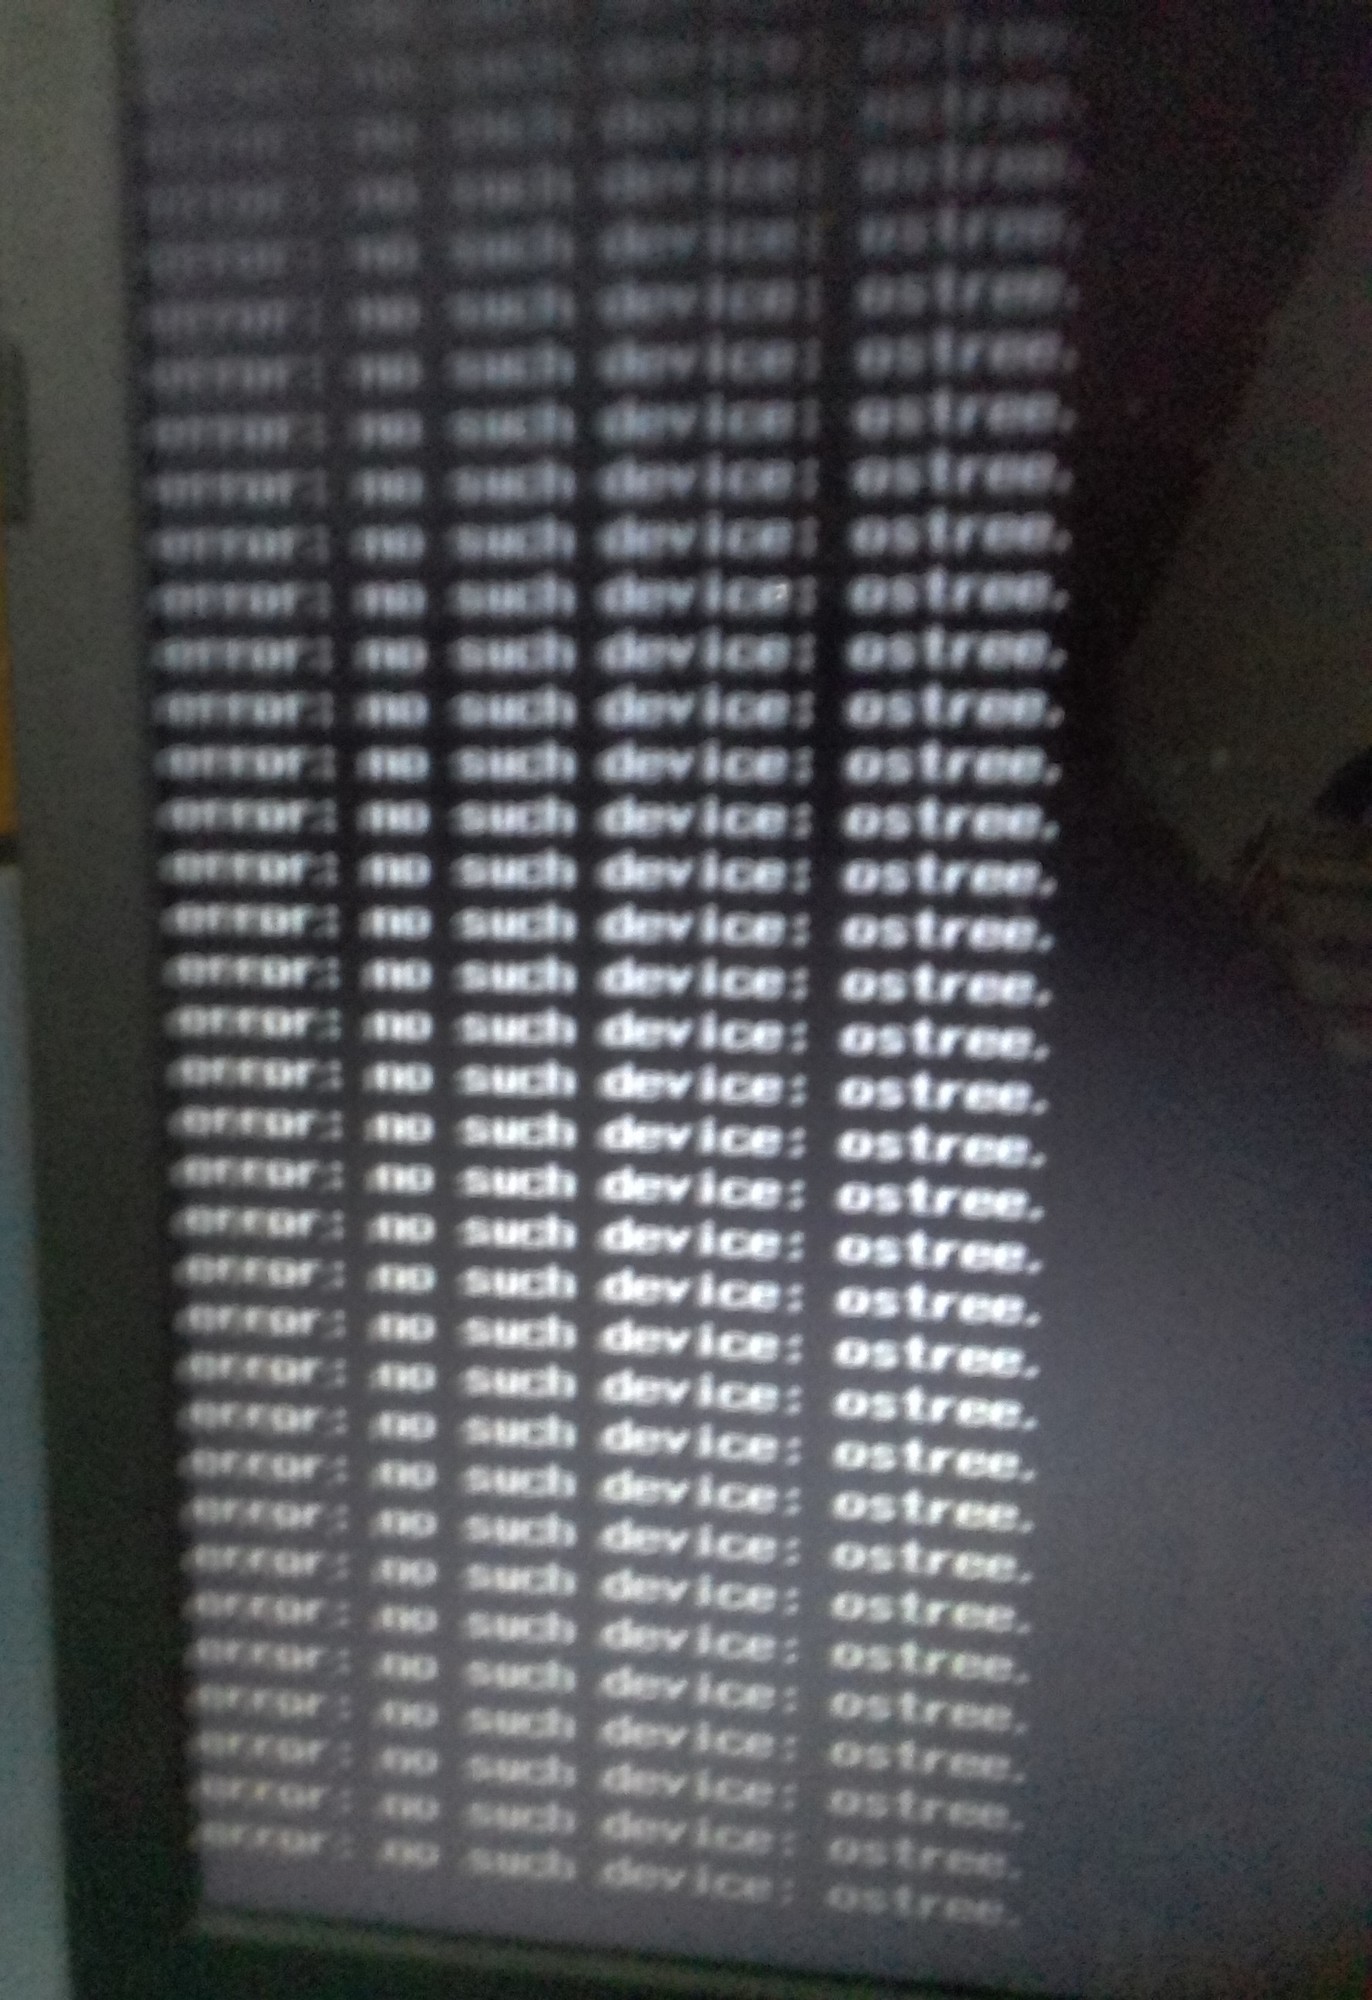 Erro ao iniciar o PC: Error no such device: ostree. e8b7599f-9174-47bb-8fce-7de338bc6c33?upload=true.jpg